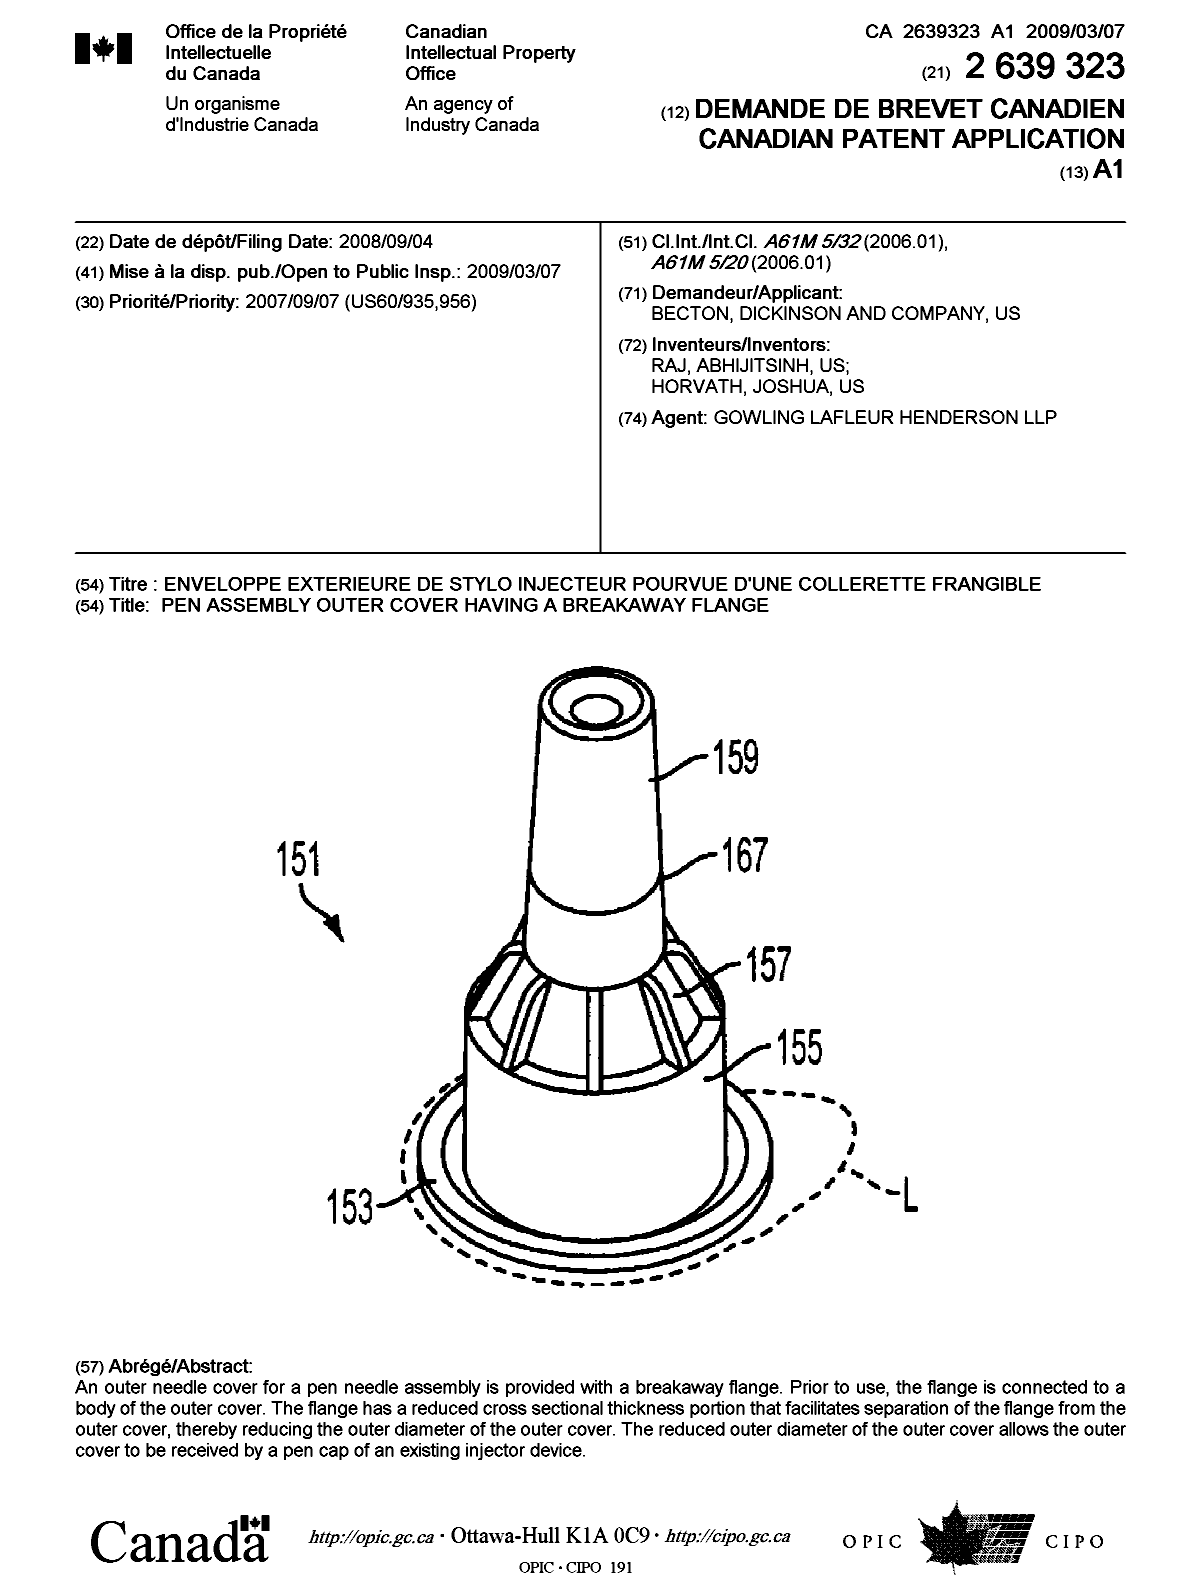 Document de brevet canadien 2639323. Page couverture 20090212. Image 1 de 1